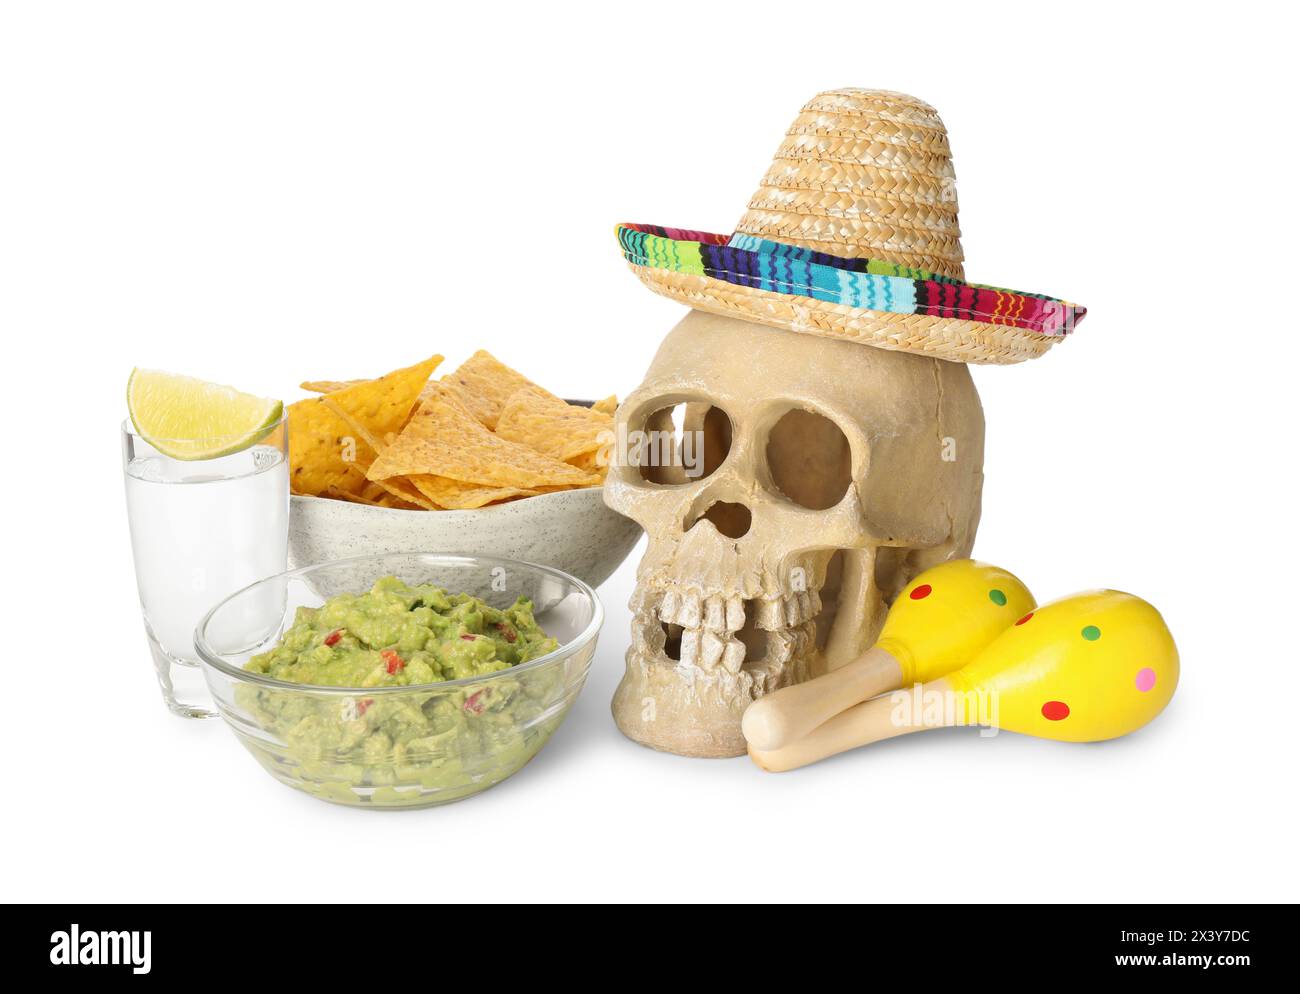 Mexikanischer Sombrero-Hut, menschlicher Schädel, Maracas, Tequila, Nachos-Chips und Guacamole in Schüsseln isoliert auf weiß Stockfoto